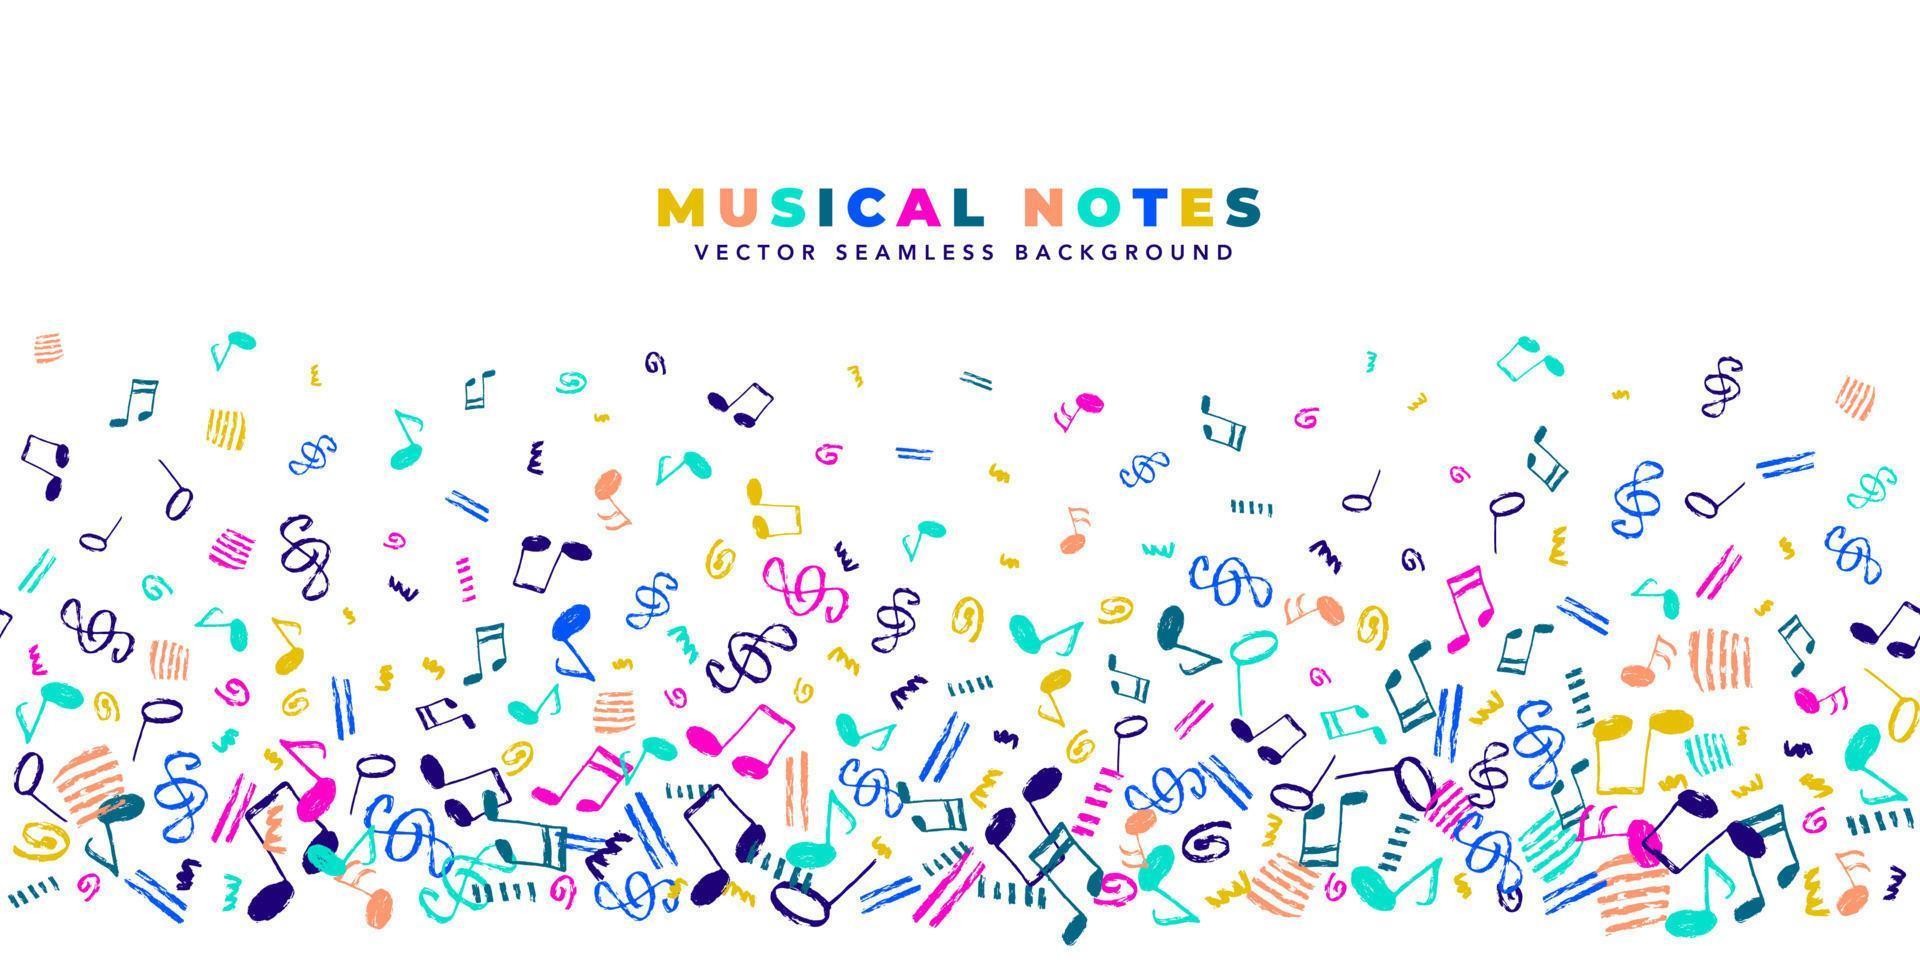 notes de musique vecteur arrière-plan transparent. modèle horizontal avec copie spacy et motif de bordure d'éléments musicaux colorés dessinés à la main.